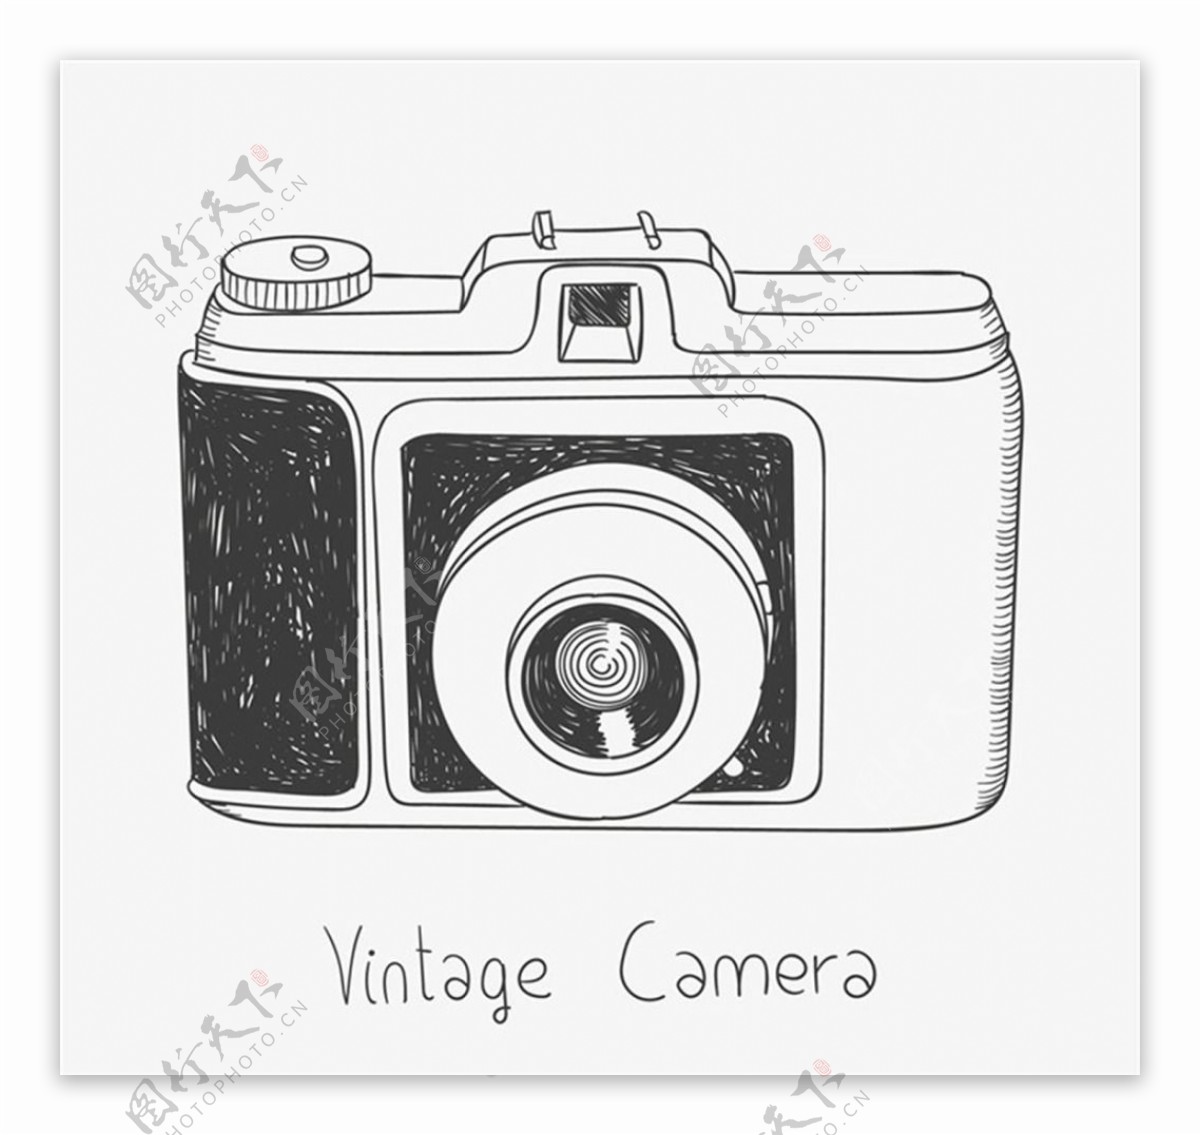 黑白手绘vintage相机